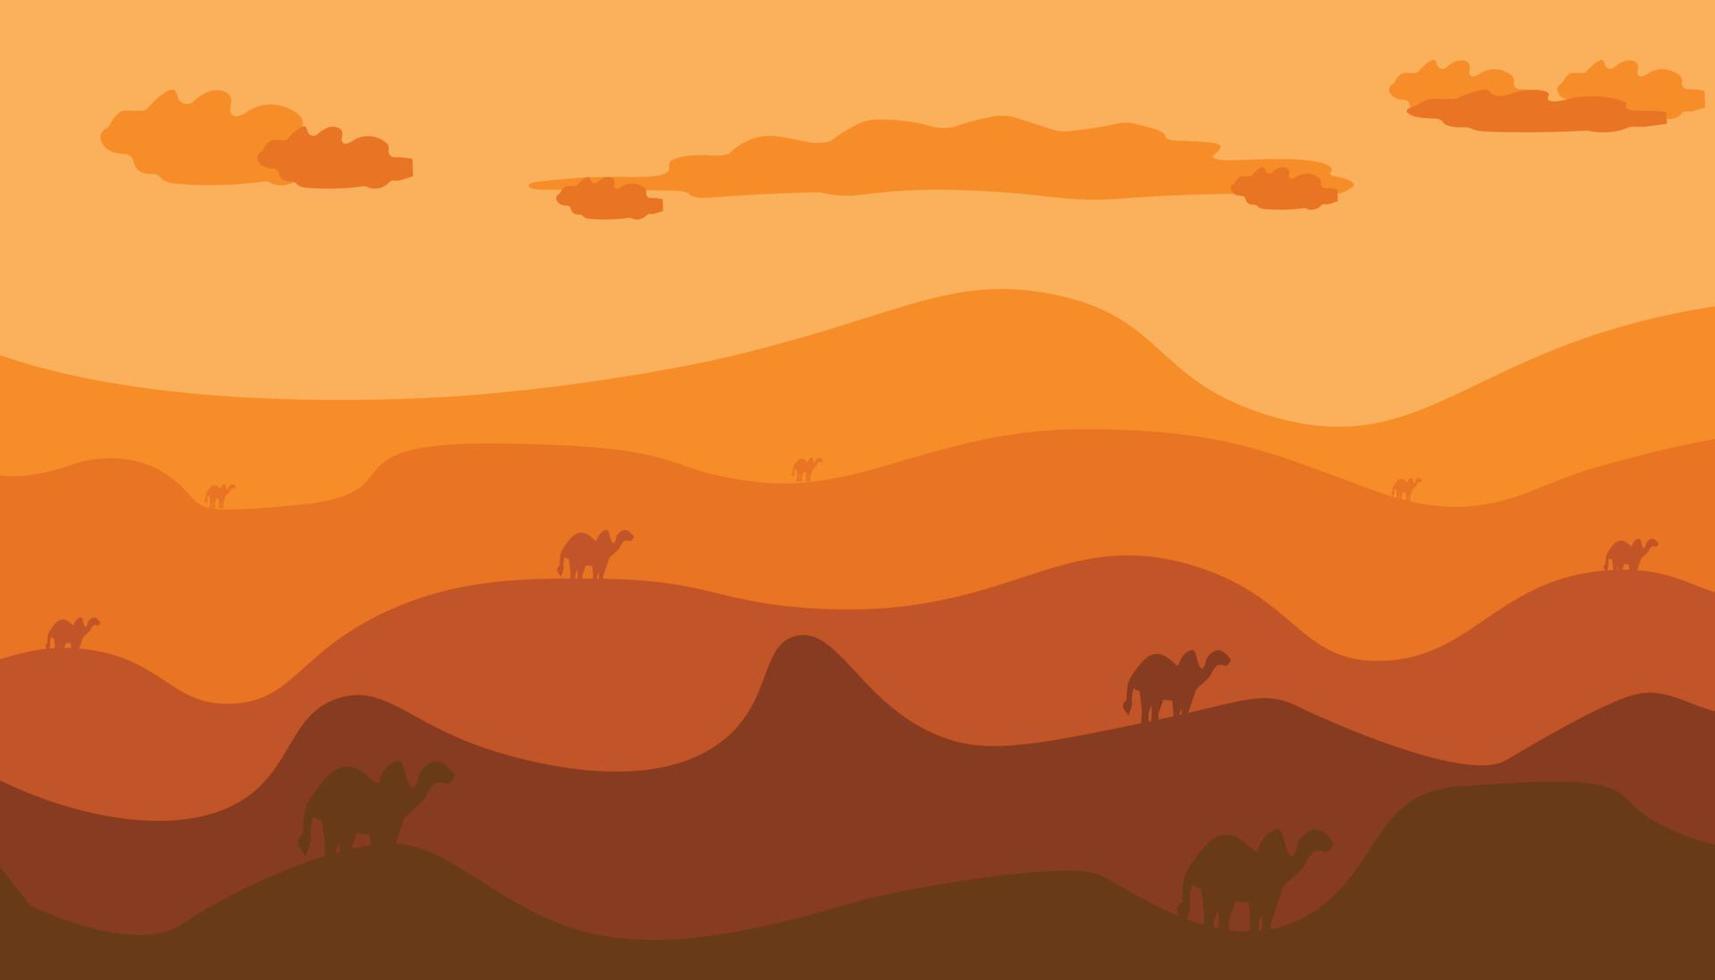 achtergrond illustratie van woestijn, kameel, wolk en bruin kleur. vector ontwerp welke is heel geschikt voor websites, appjes, afdrukken.